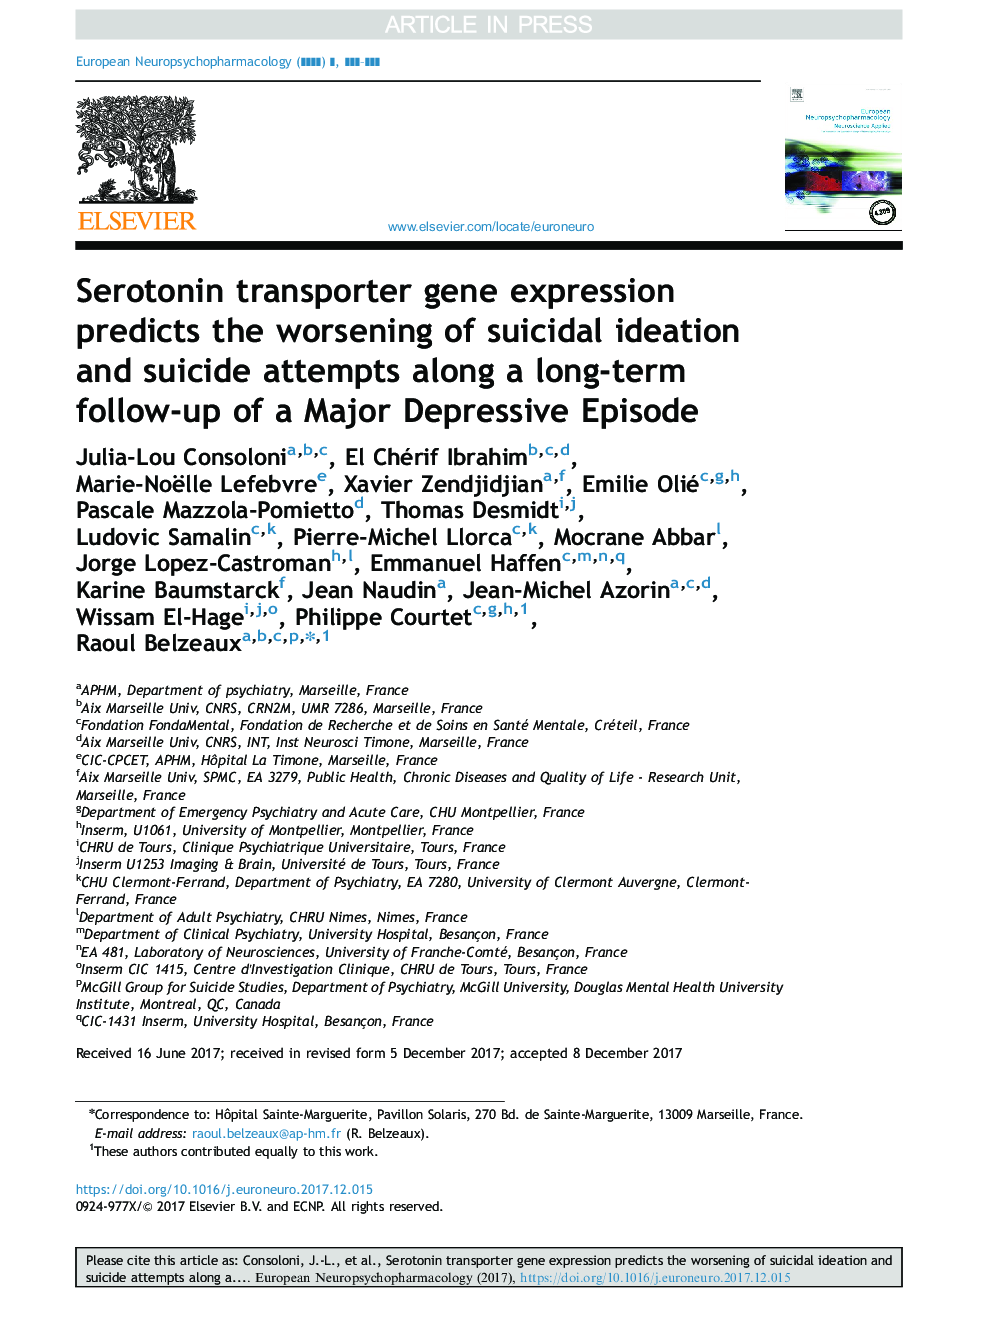 بیان ژن حمل کننده سروتونین، بدتر شدن ایده های خودکشی و تلاش های خودکشی را در طول یک پیگیری طولانی مدت از قسمت عمده افسردگی پیش بینی می کند 